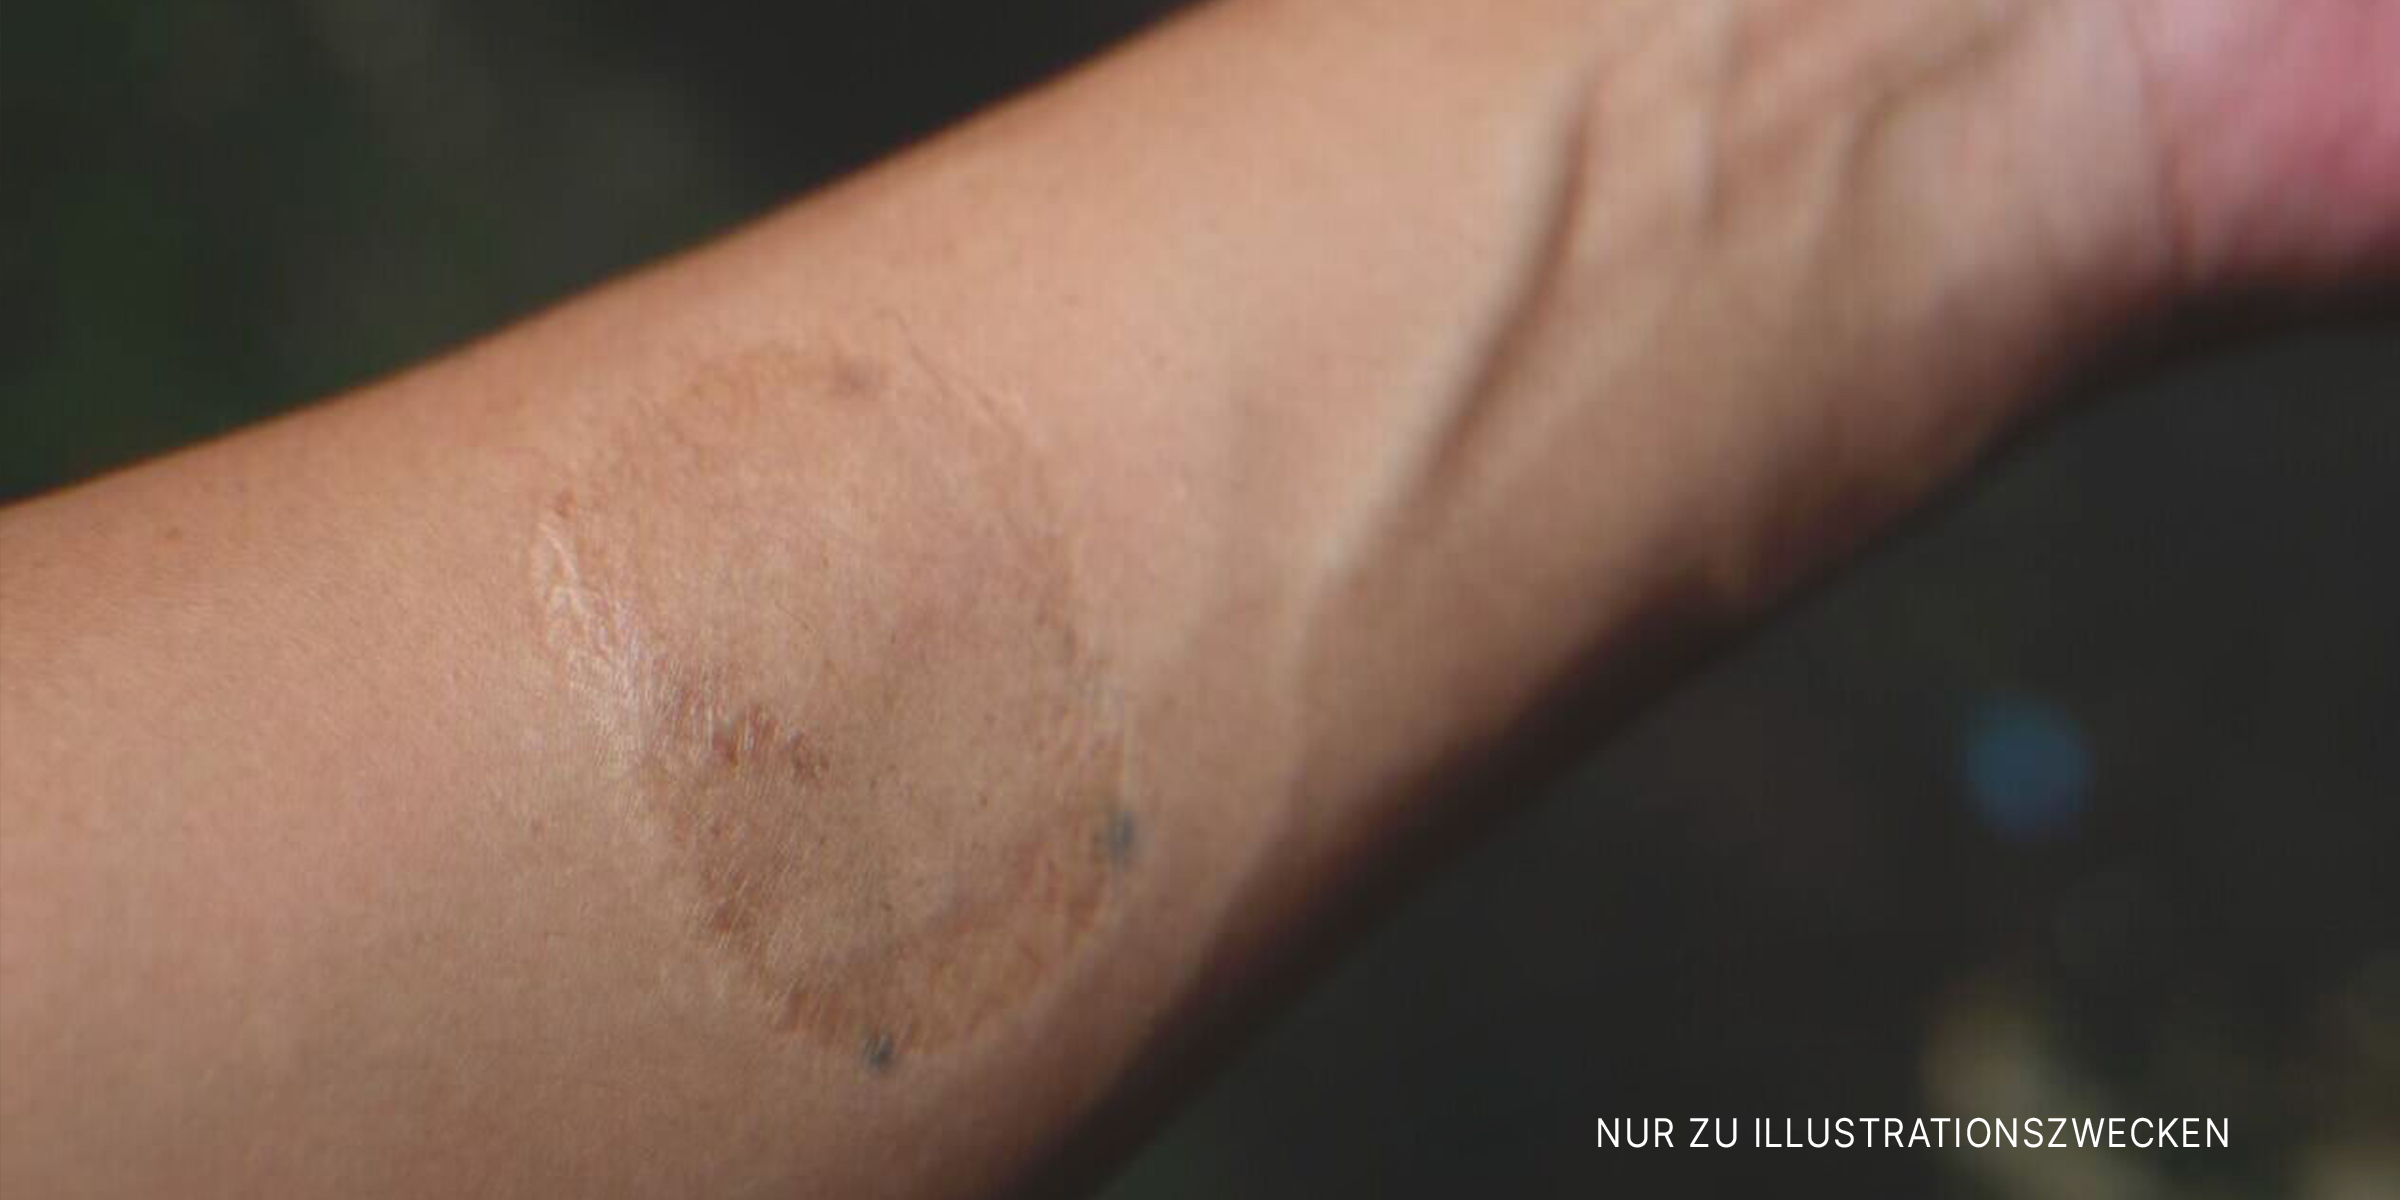 Narbe auf dem Arm einer Frau. | Quelle: Shutterstock